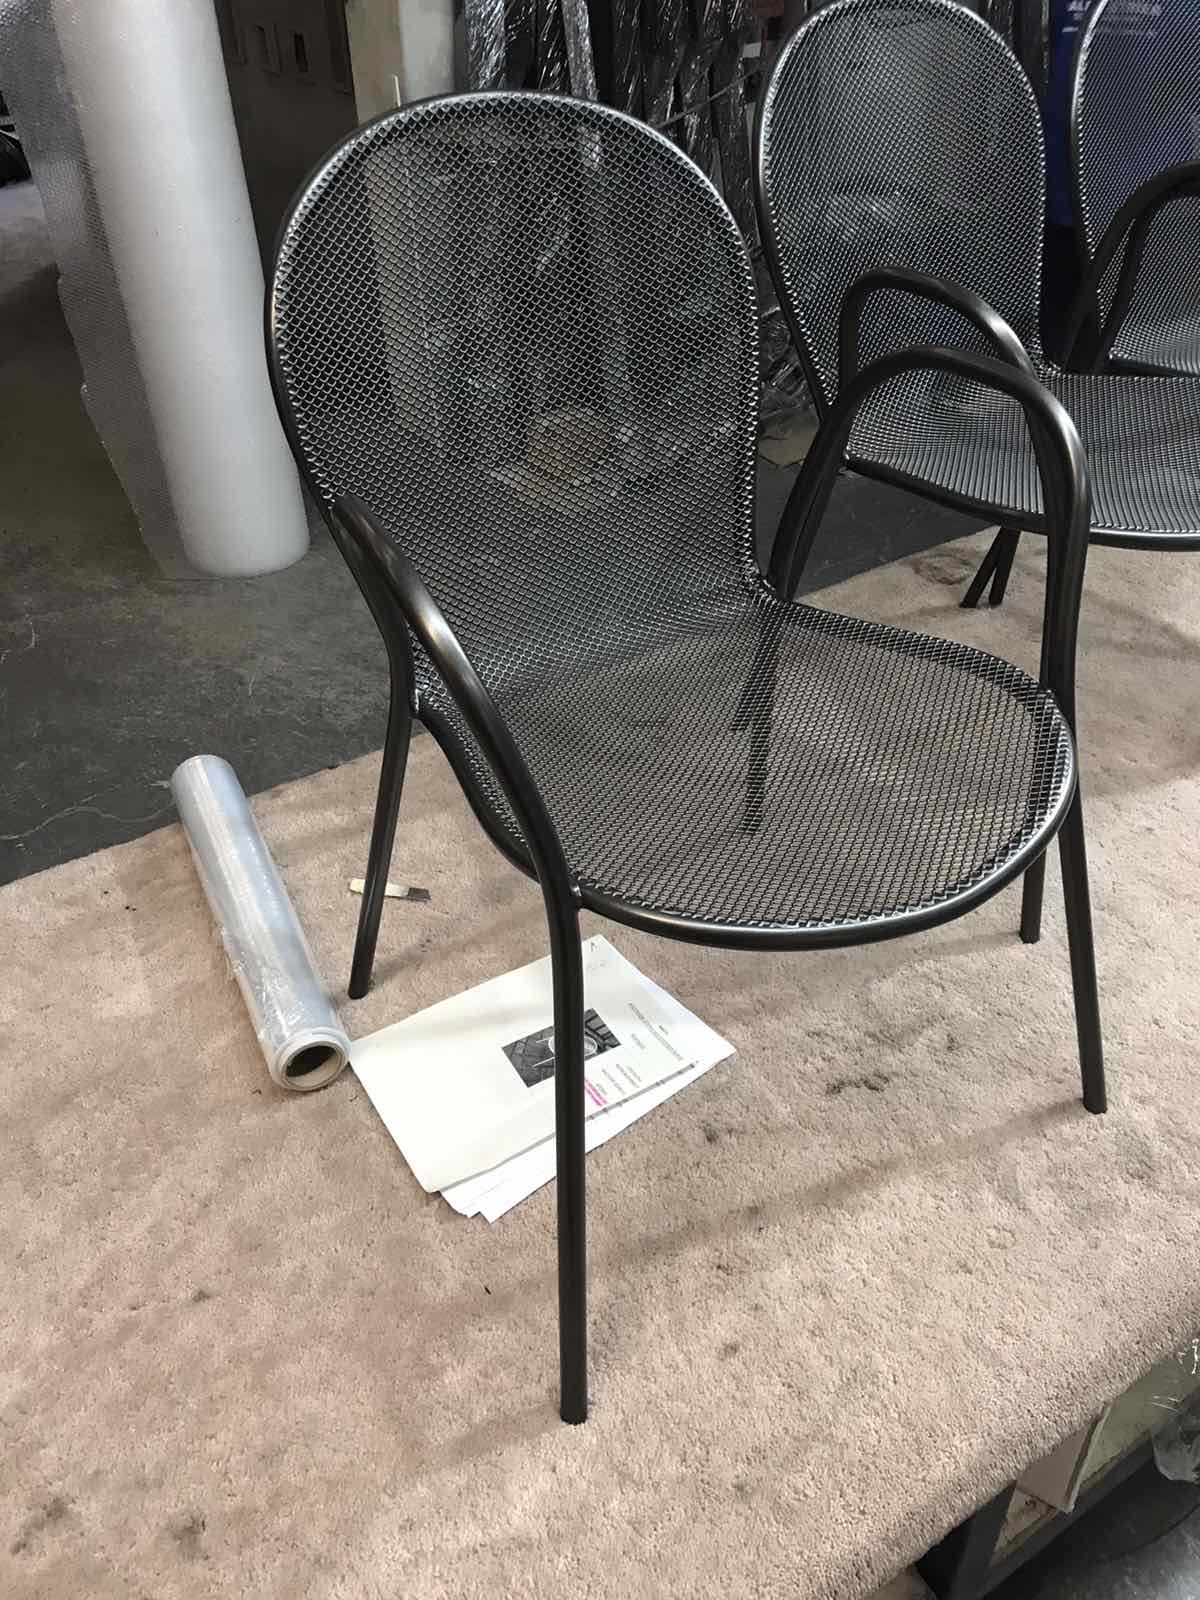 Ηλεκτροστατική βαφή μεταλλικής καρέκλας σε χρώμα AkzoNobel Maganese 3